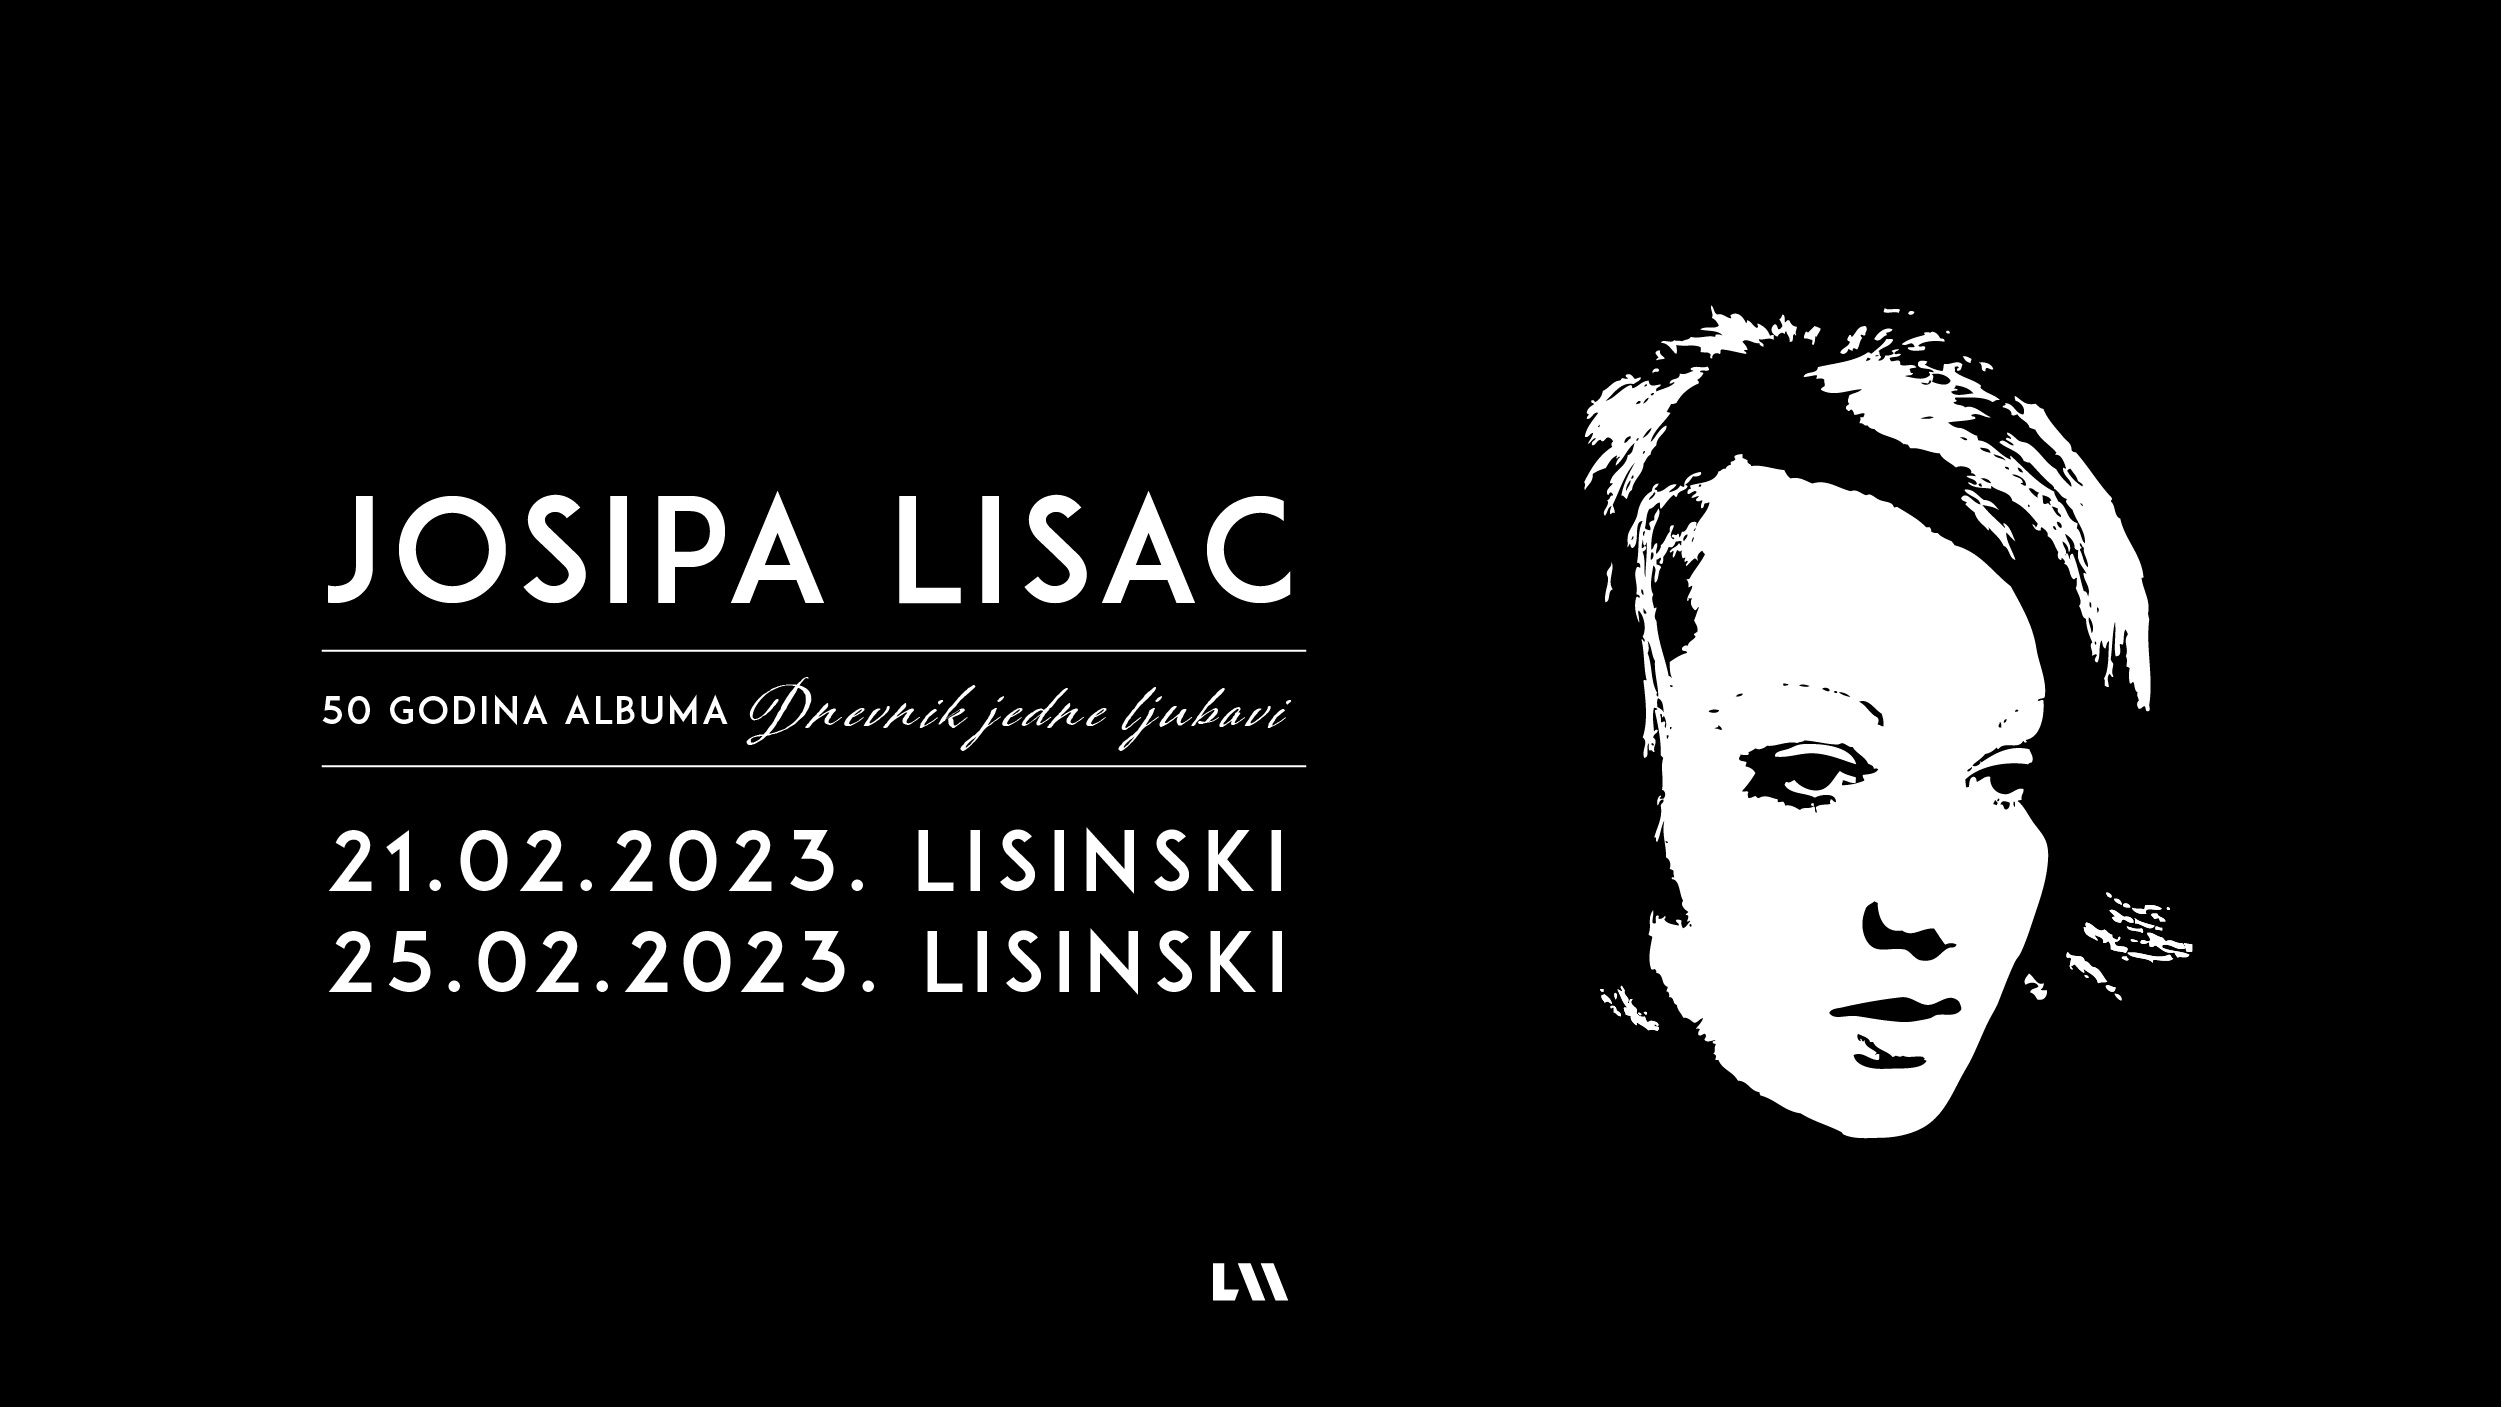 Zbog ogromnog interesa dodan još jedan zagrebački koncert Josipe Lisac 25. veljače